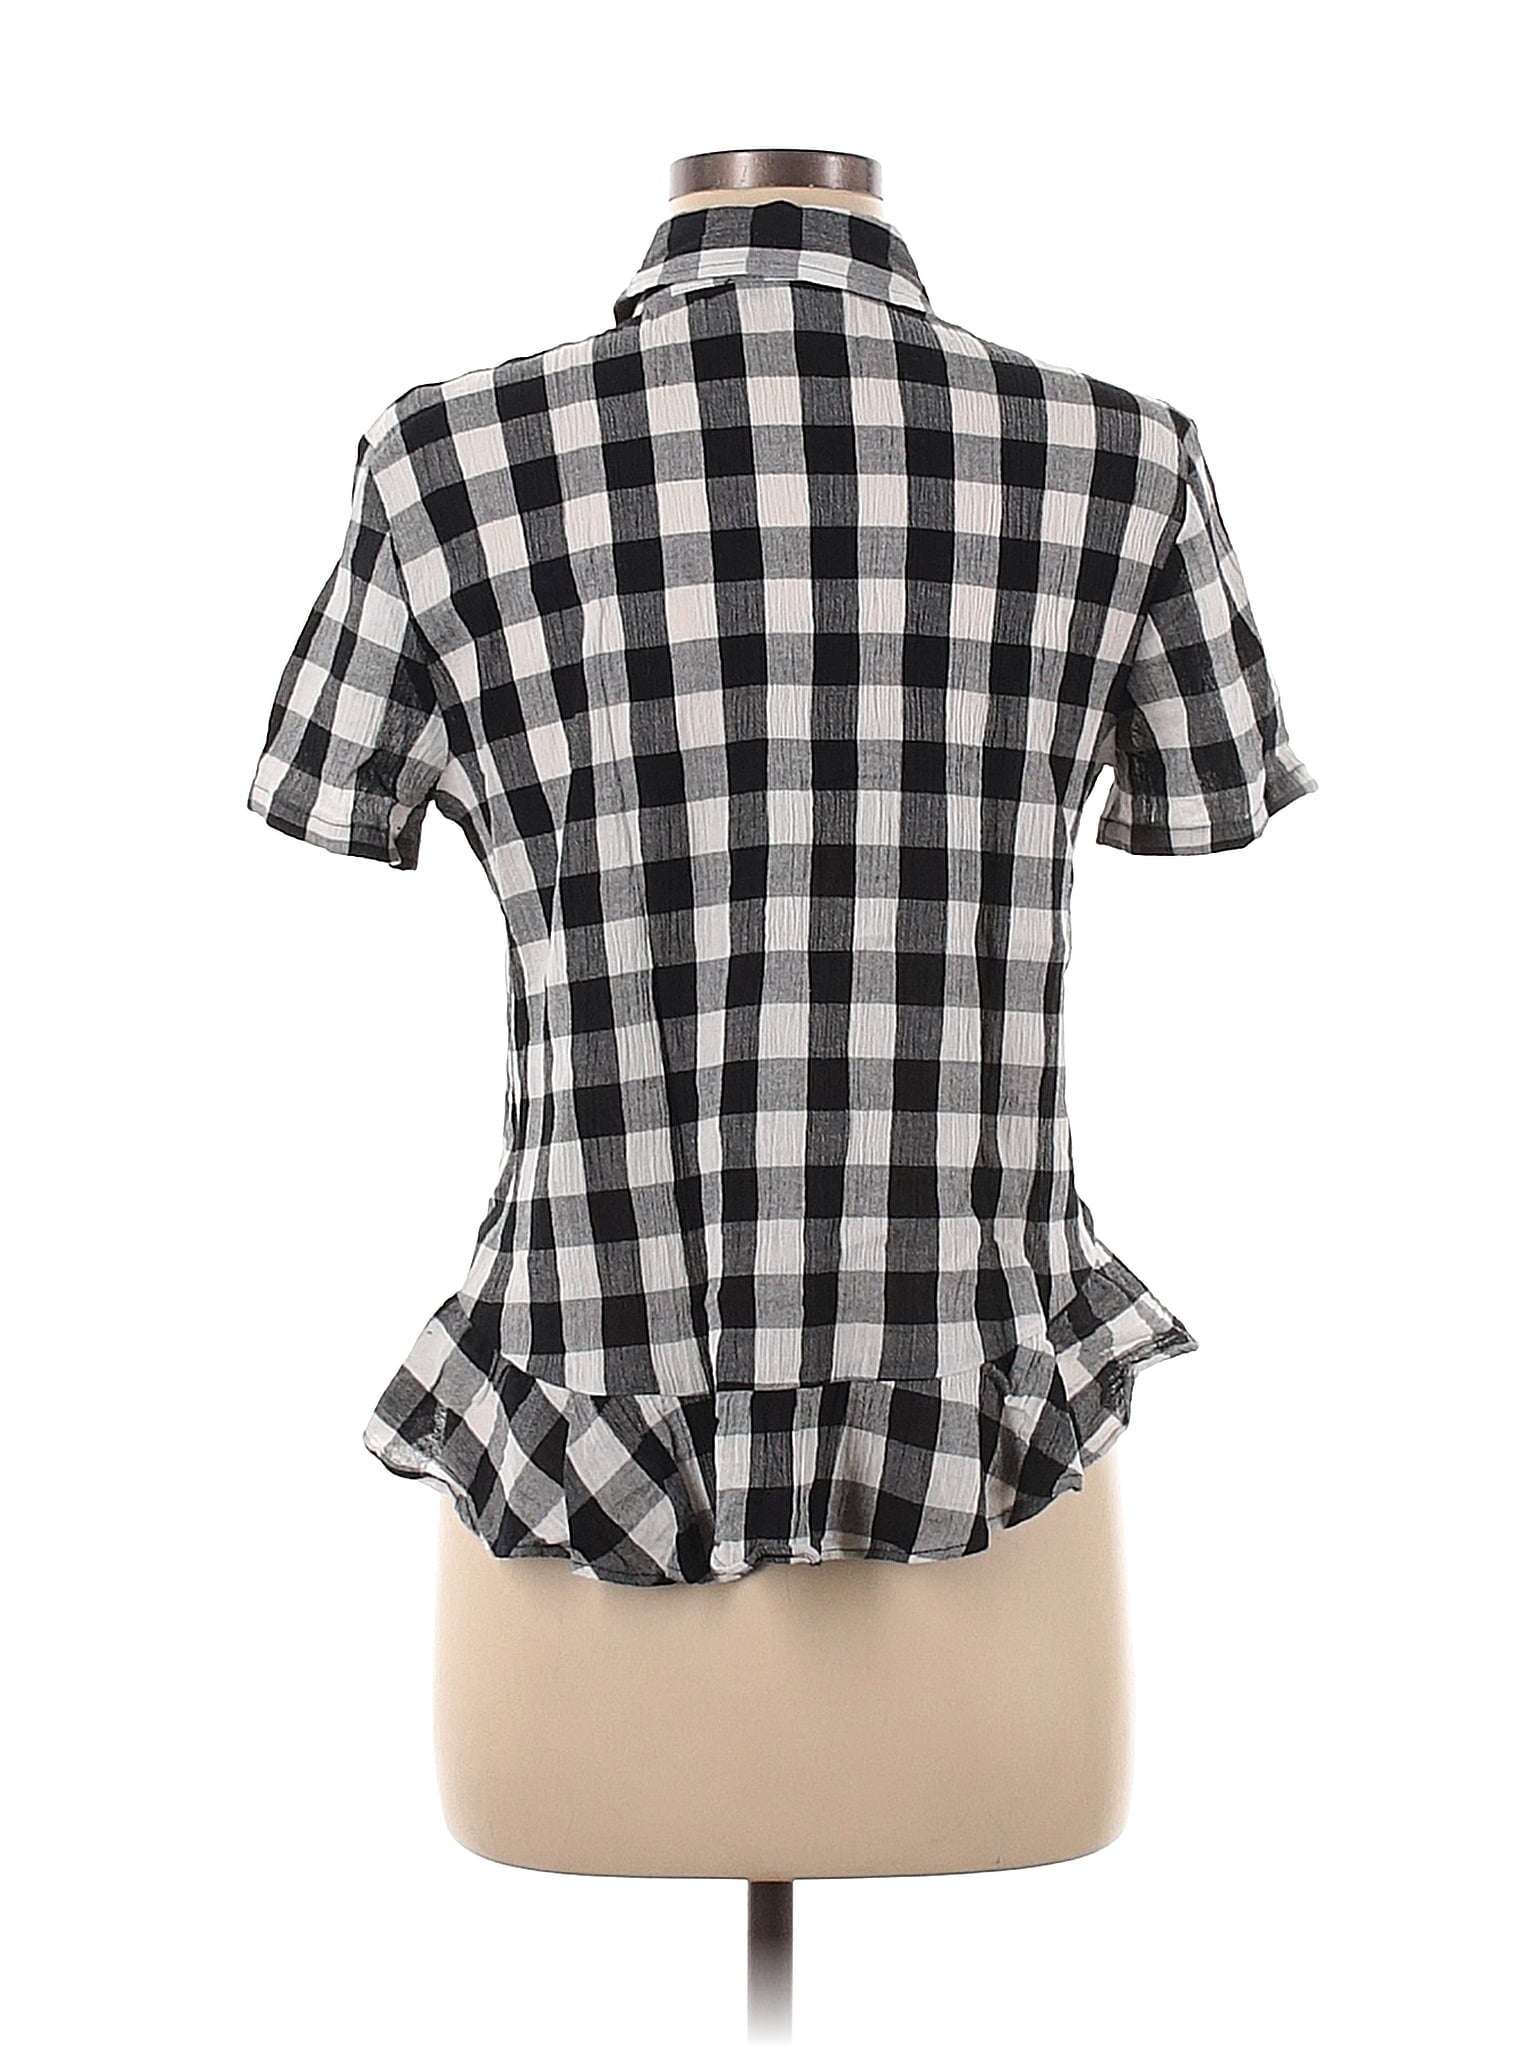 Short Sleeve Button-Down Shirt size - M